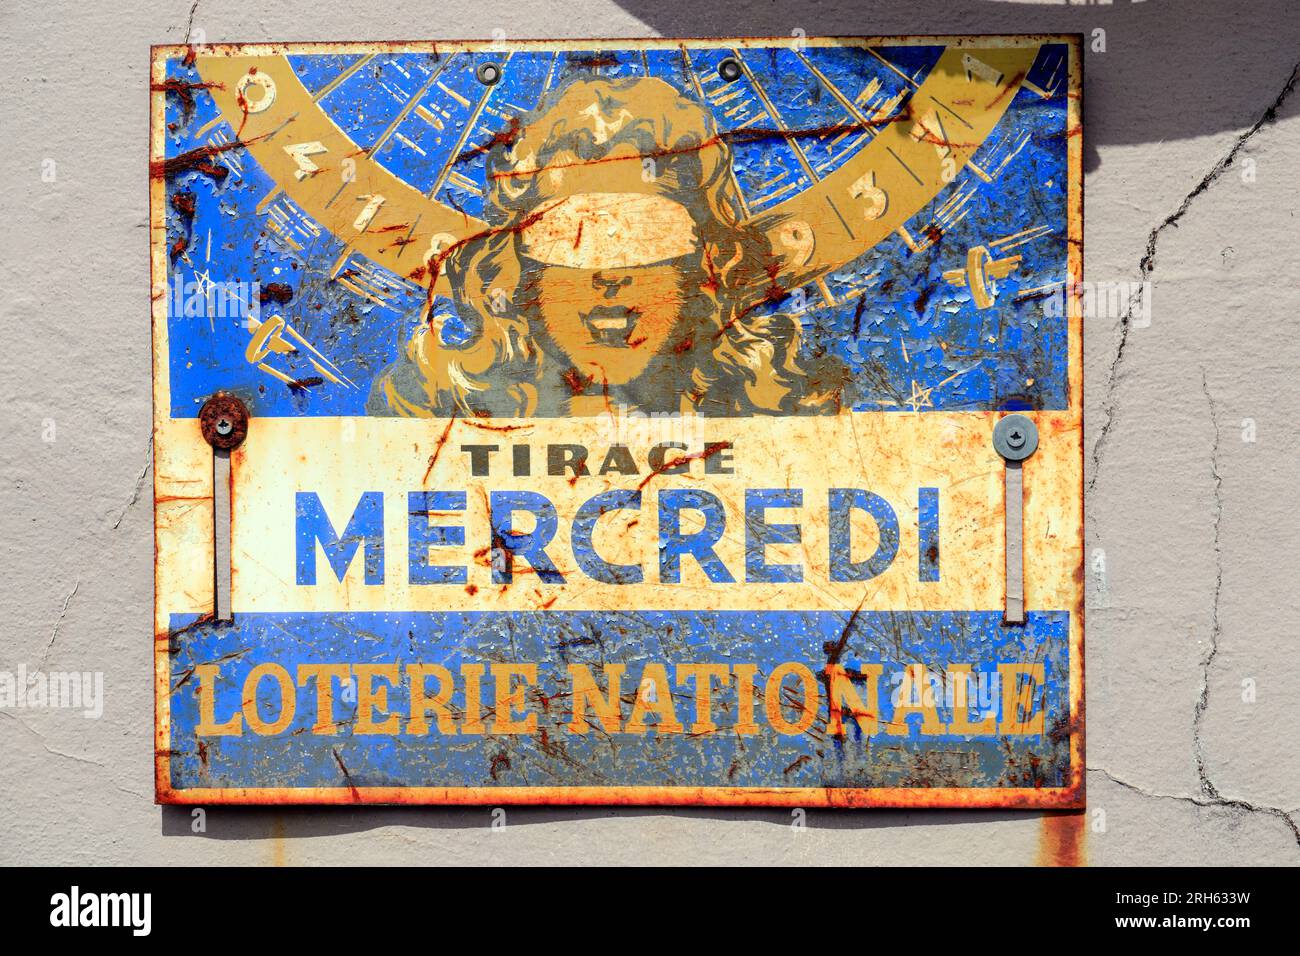 Alte Emaille-Werbung für die nationale Lotterie der Mercredi in Frankreich. Stockfoto